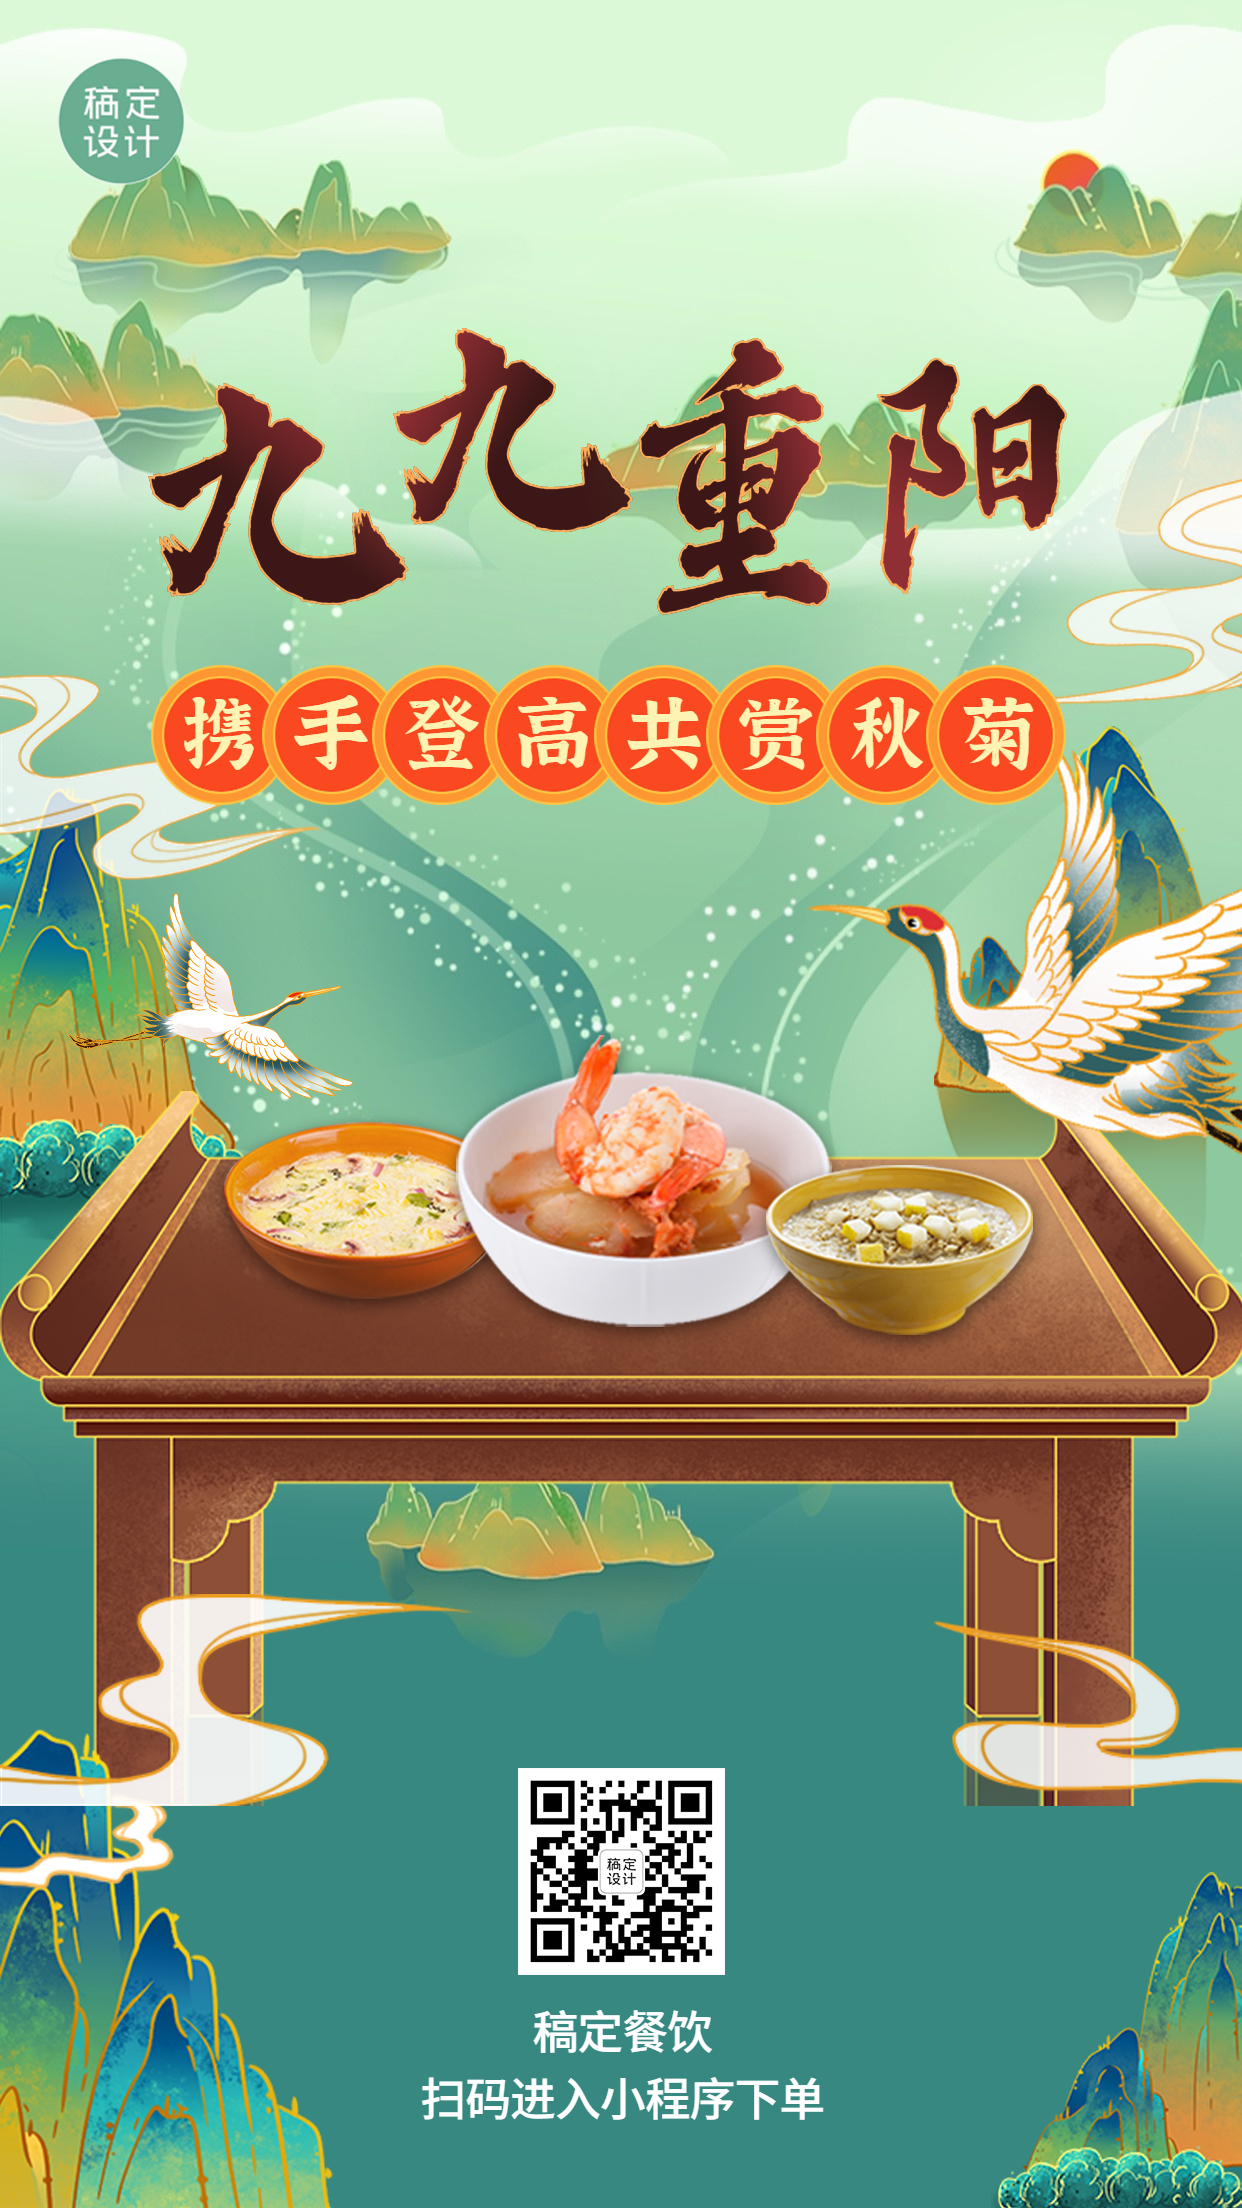 重阳节中餐正餐节日营销手绘手机海报预览效果